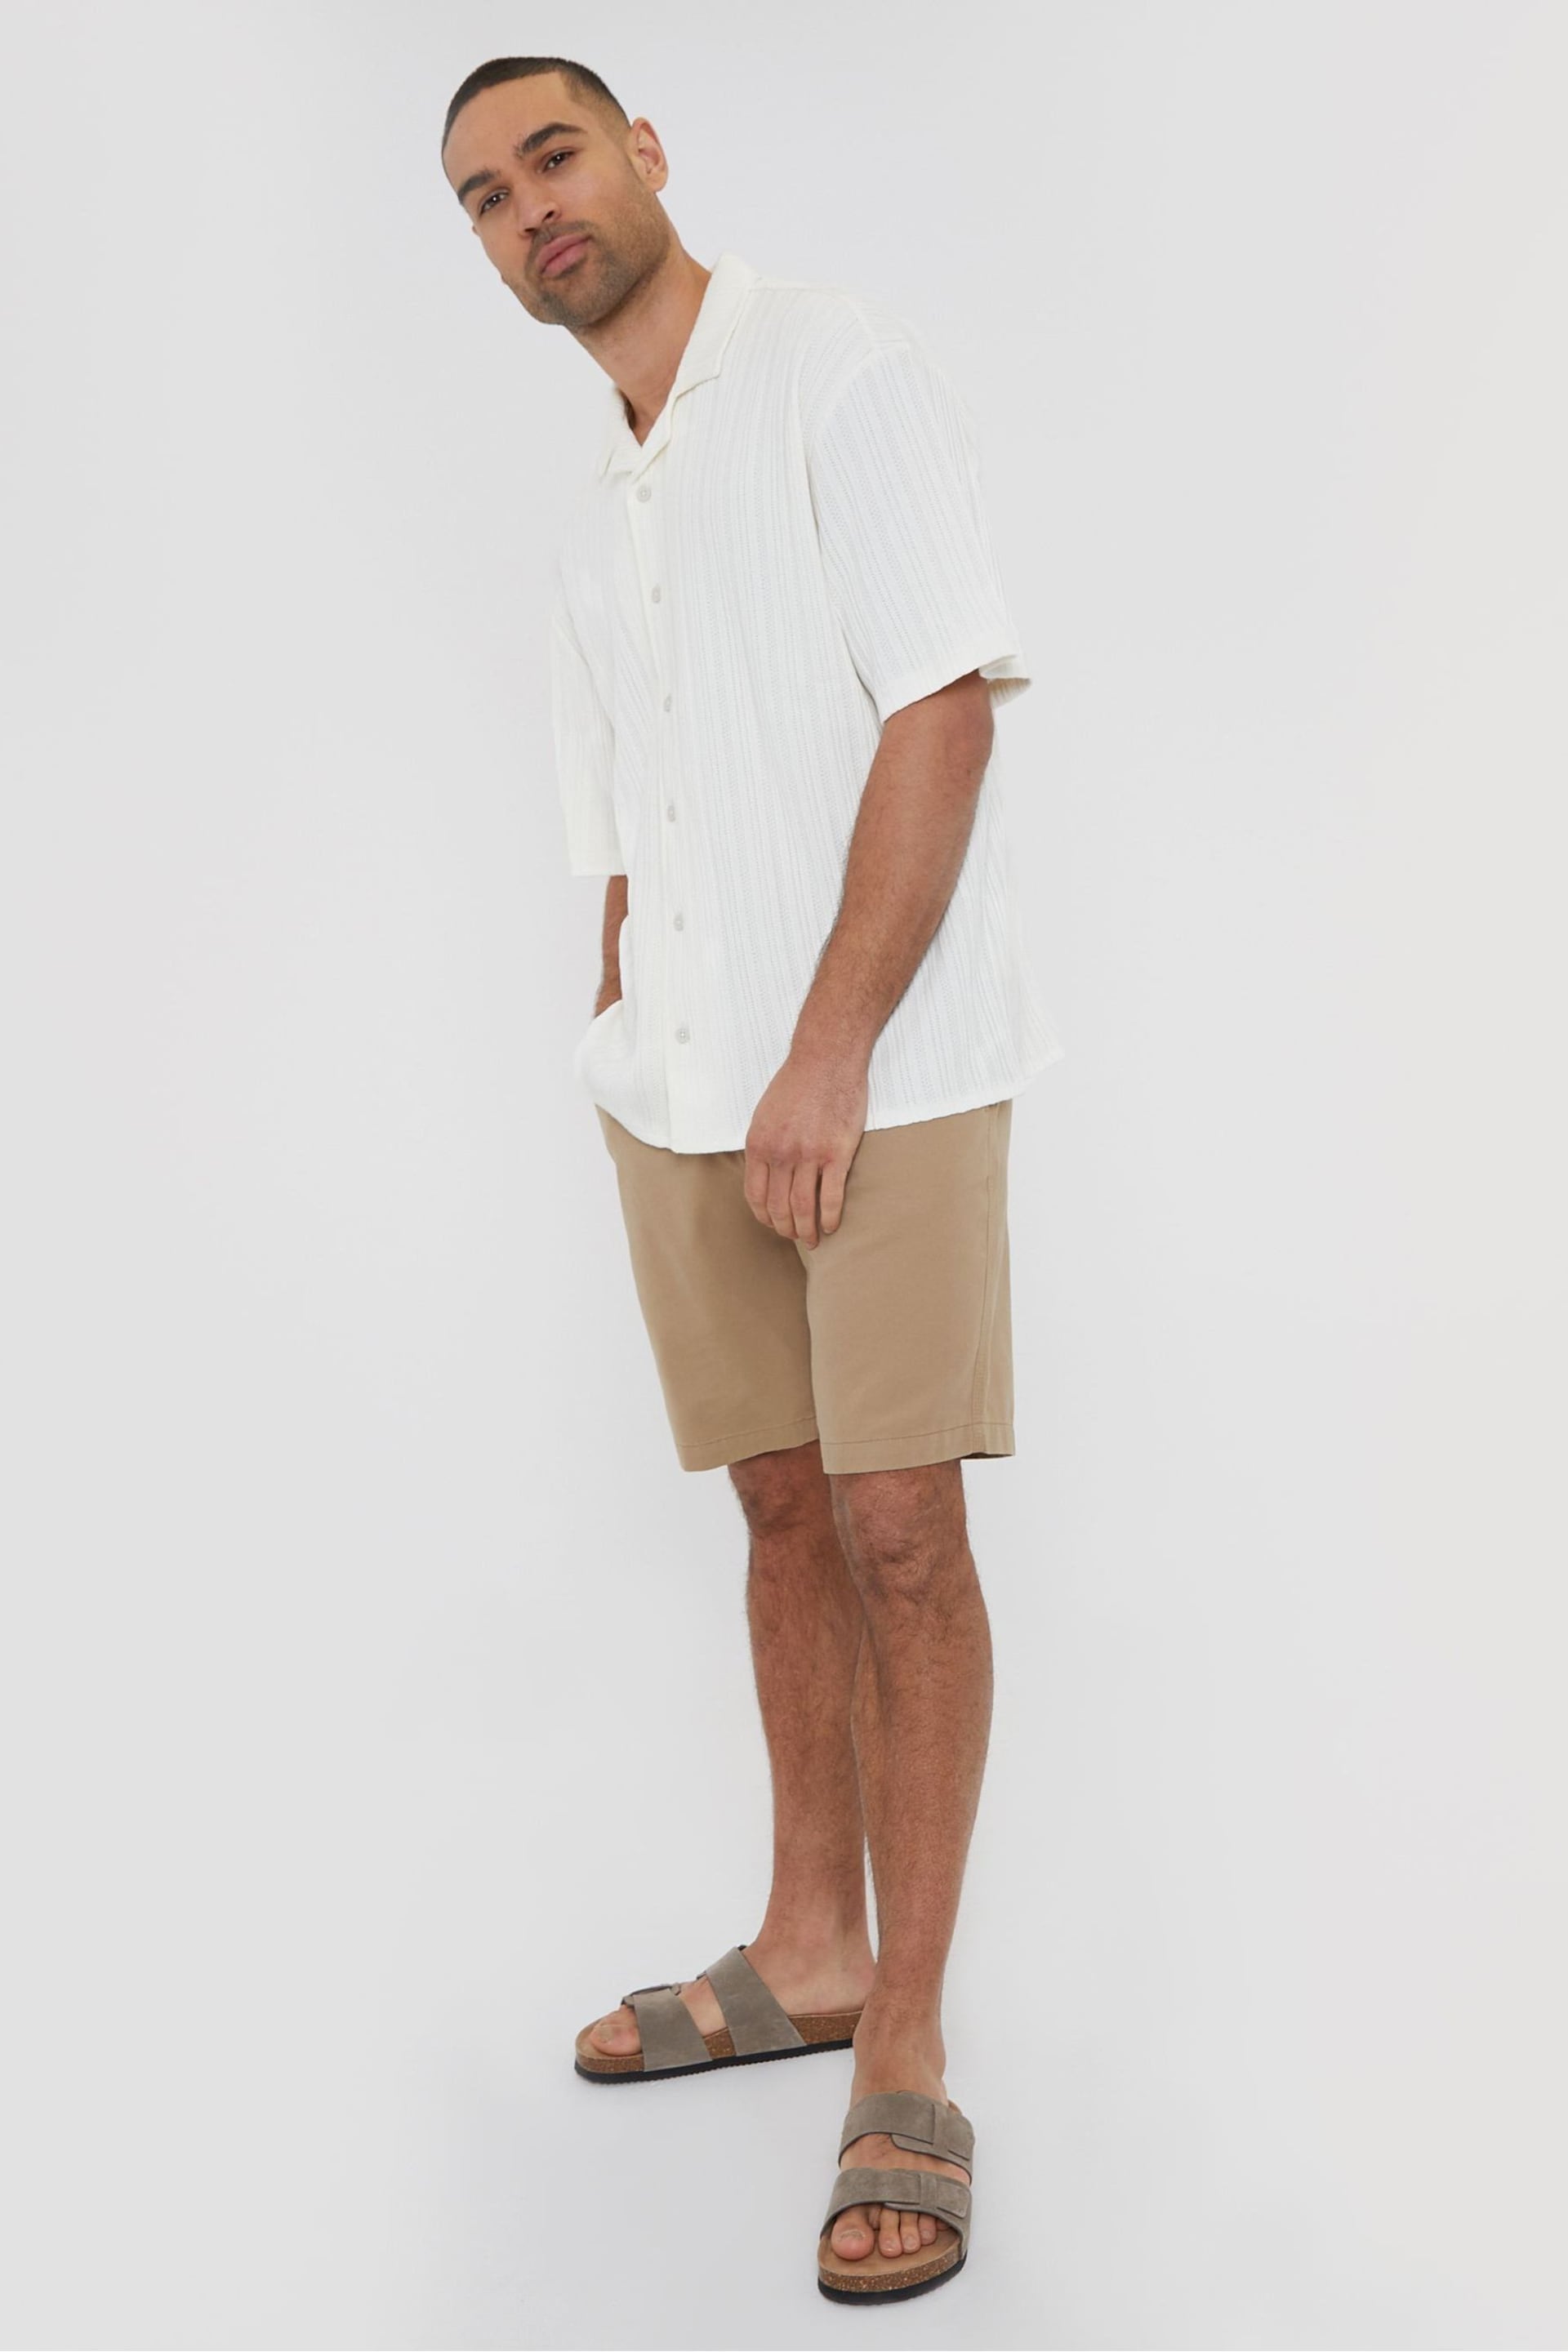 Threadbare White Cotton Blend Zig Zag Revere Collar Short Sleeve Shirt - Image 4 of 5